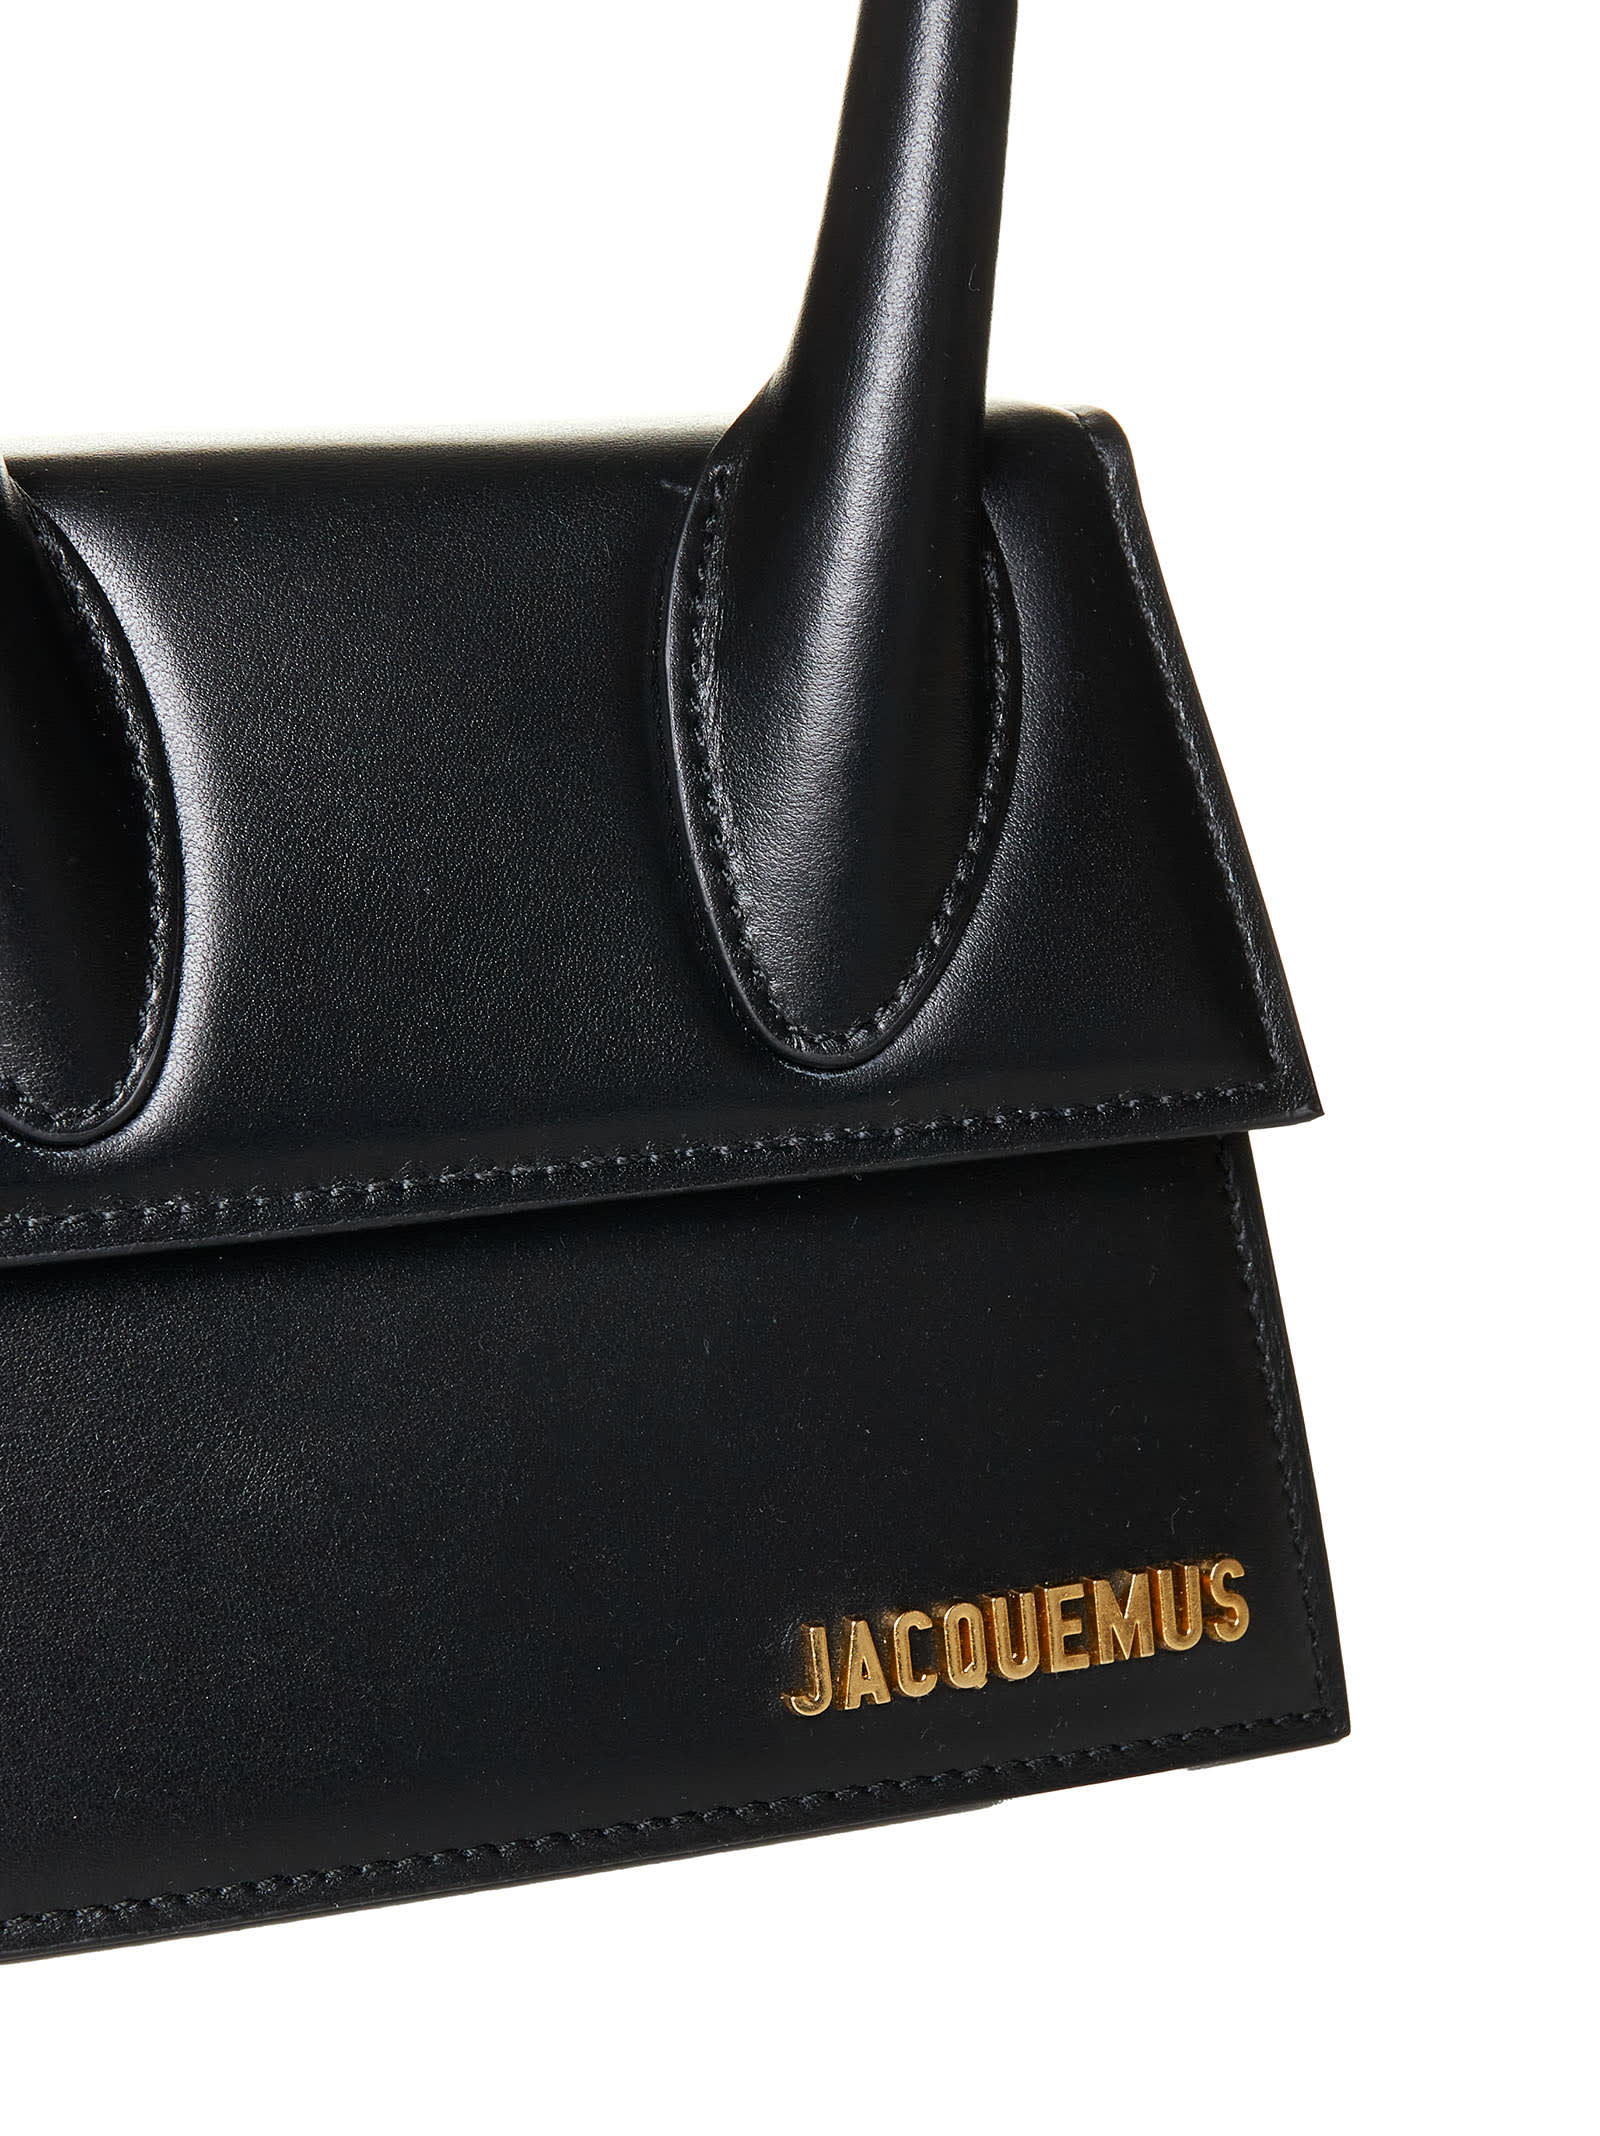 Shop Jacquemus Tote In Black